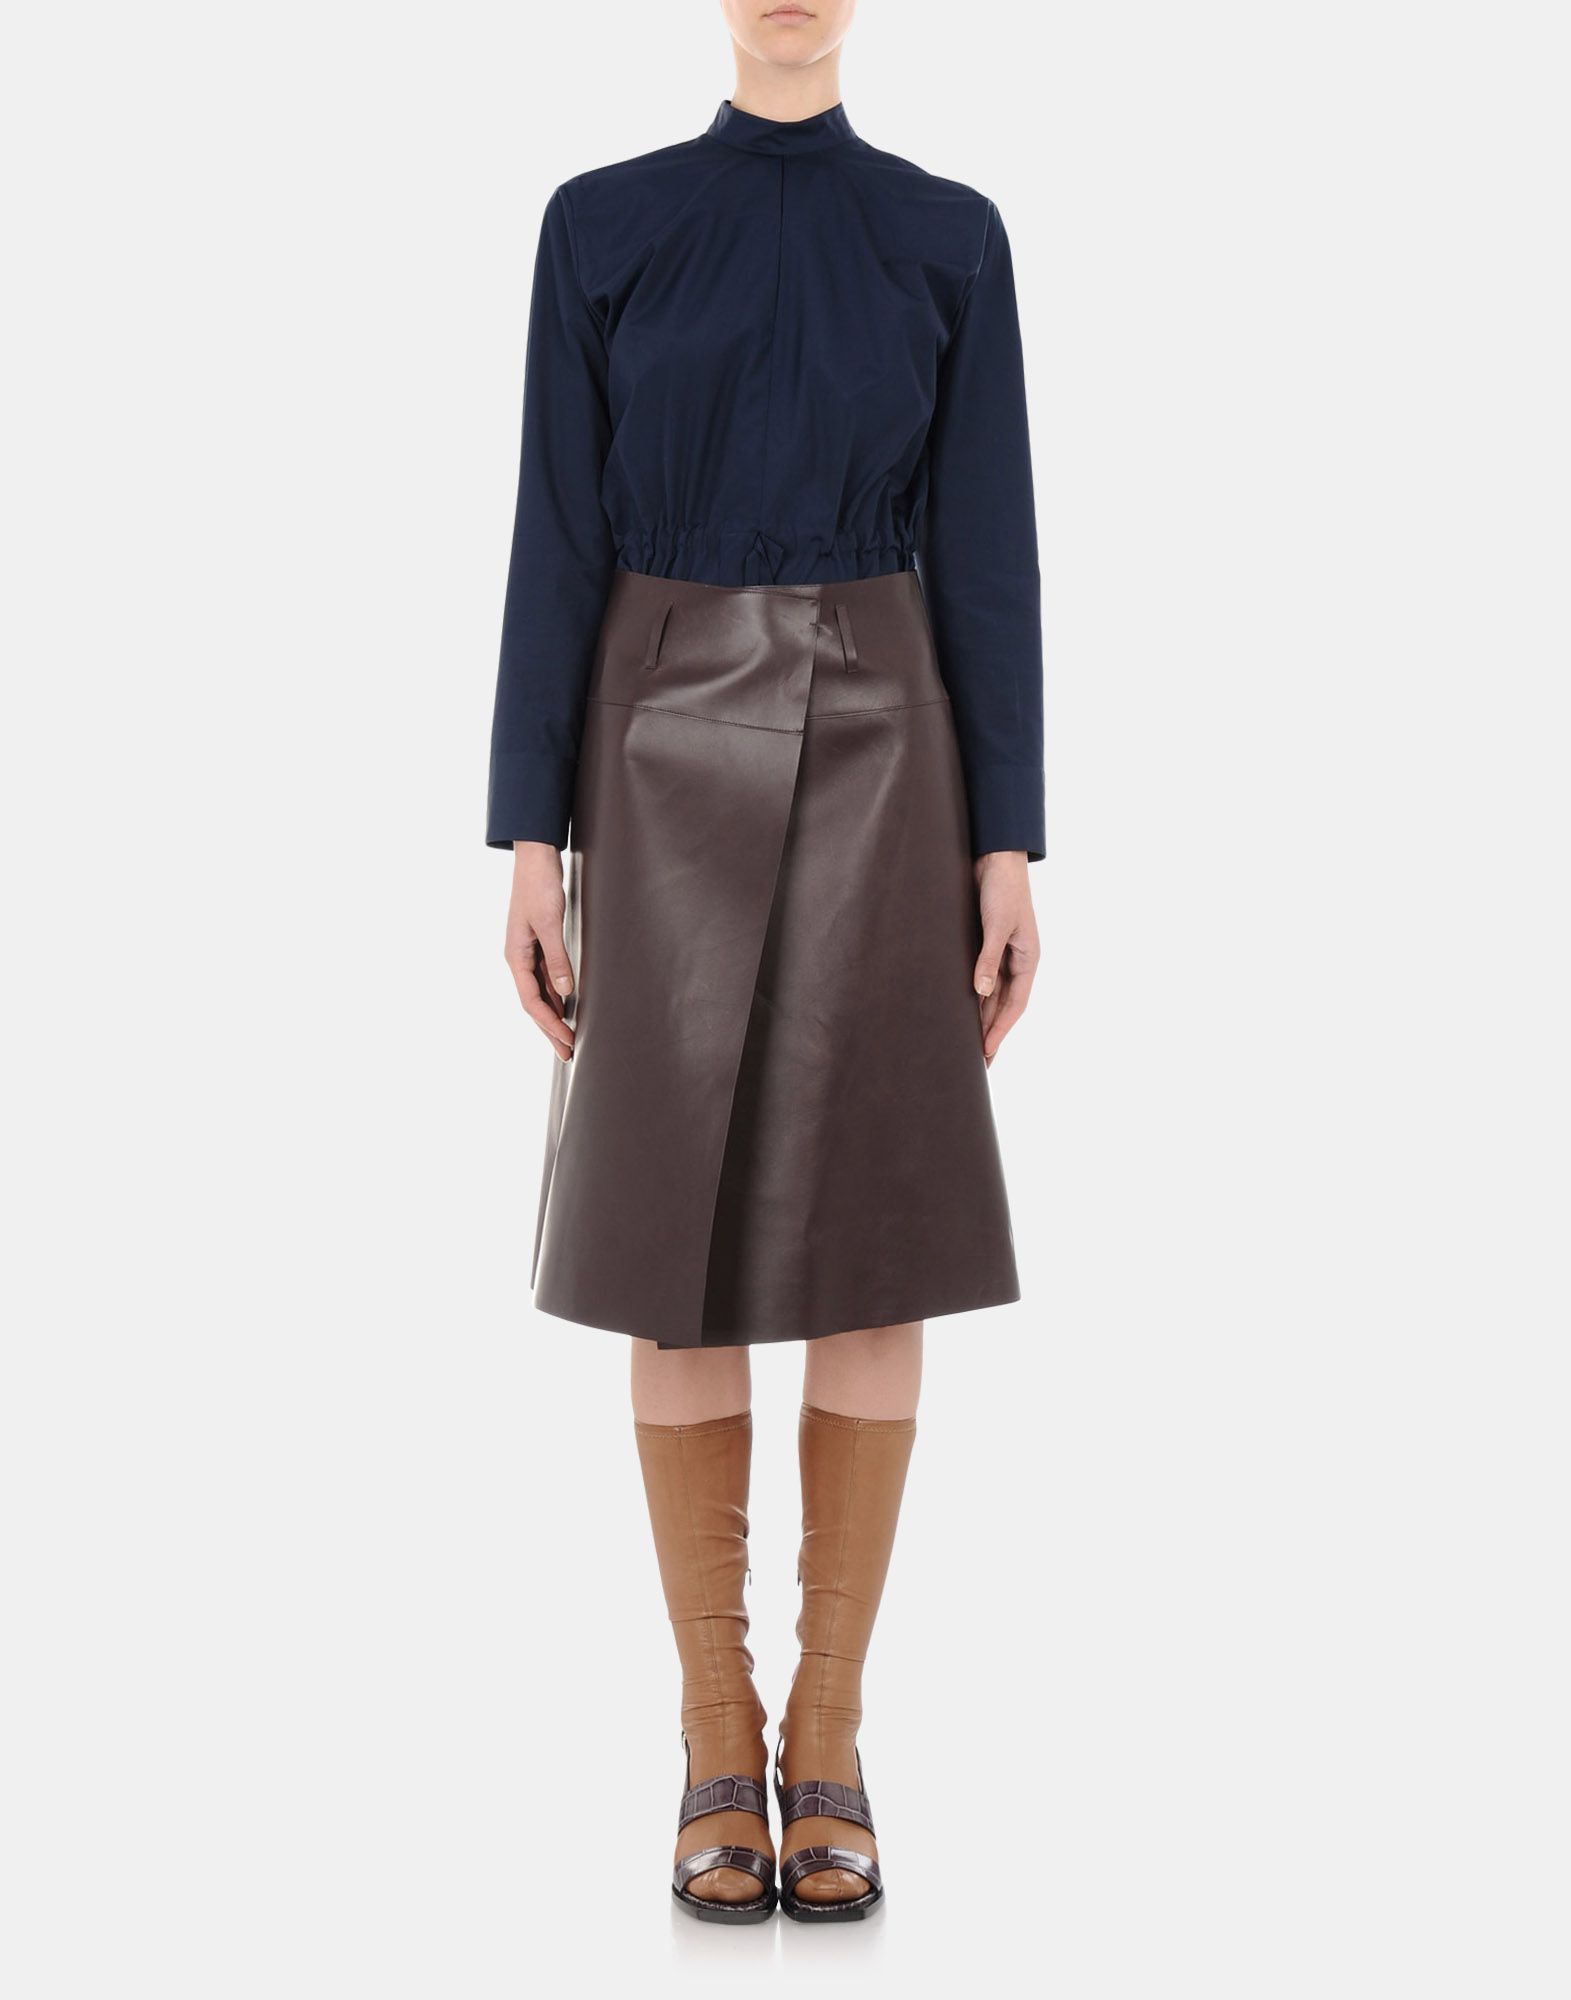 Leather skirt Women - Skirts Women on Jil Sander Online Store